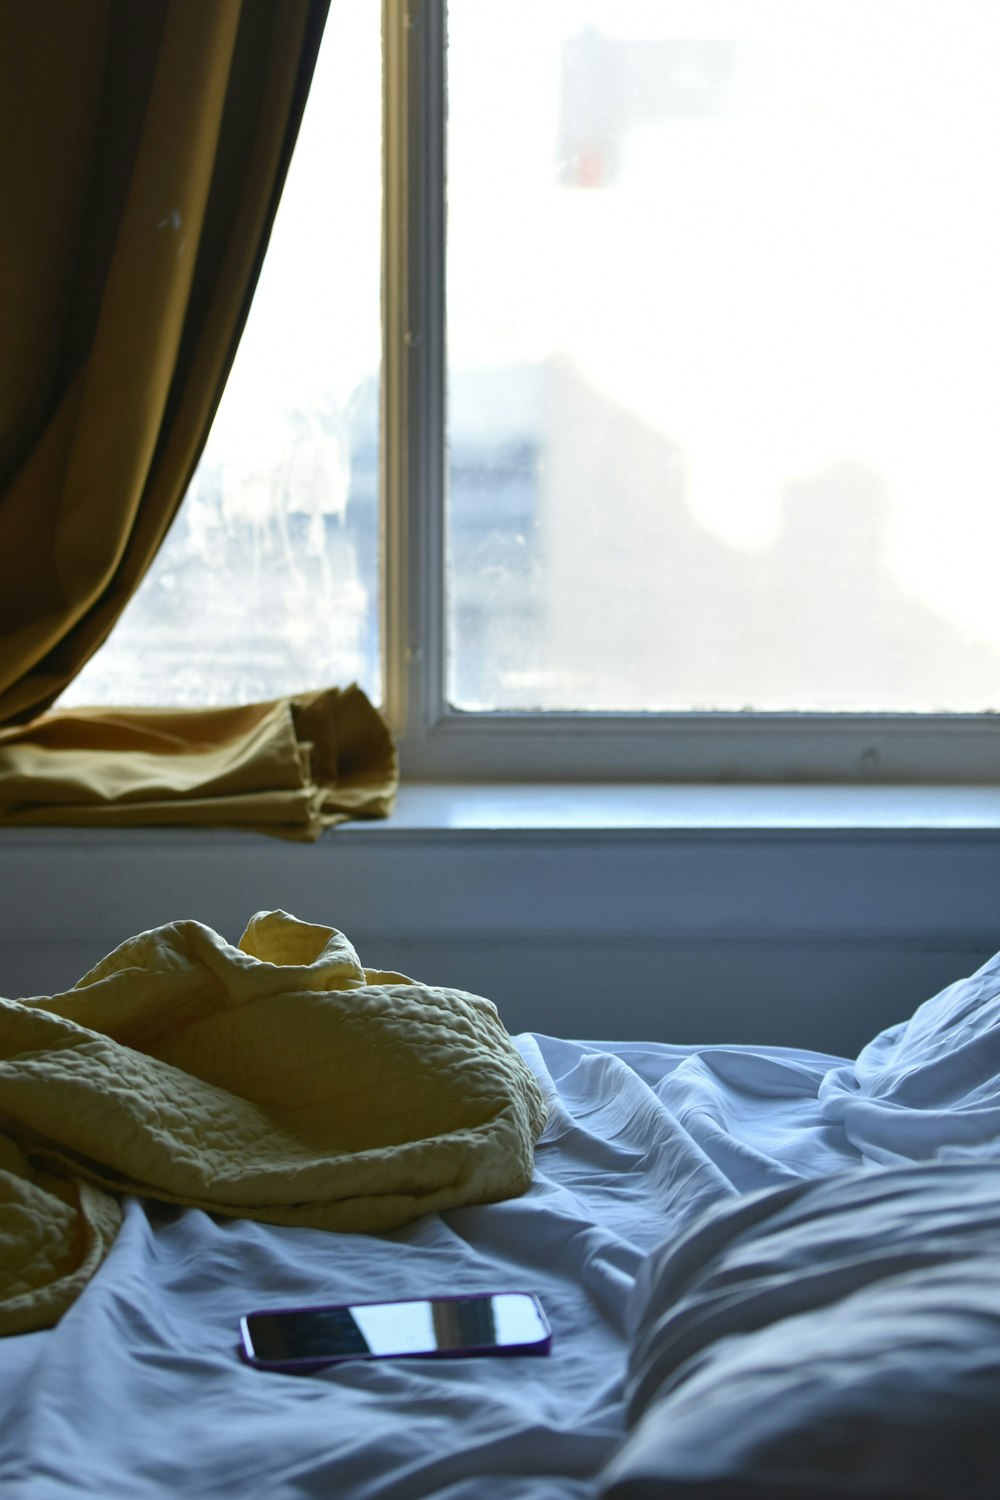 Un teléfono celular tirado en una cama junto a una ventana